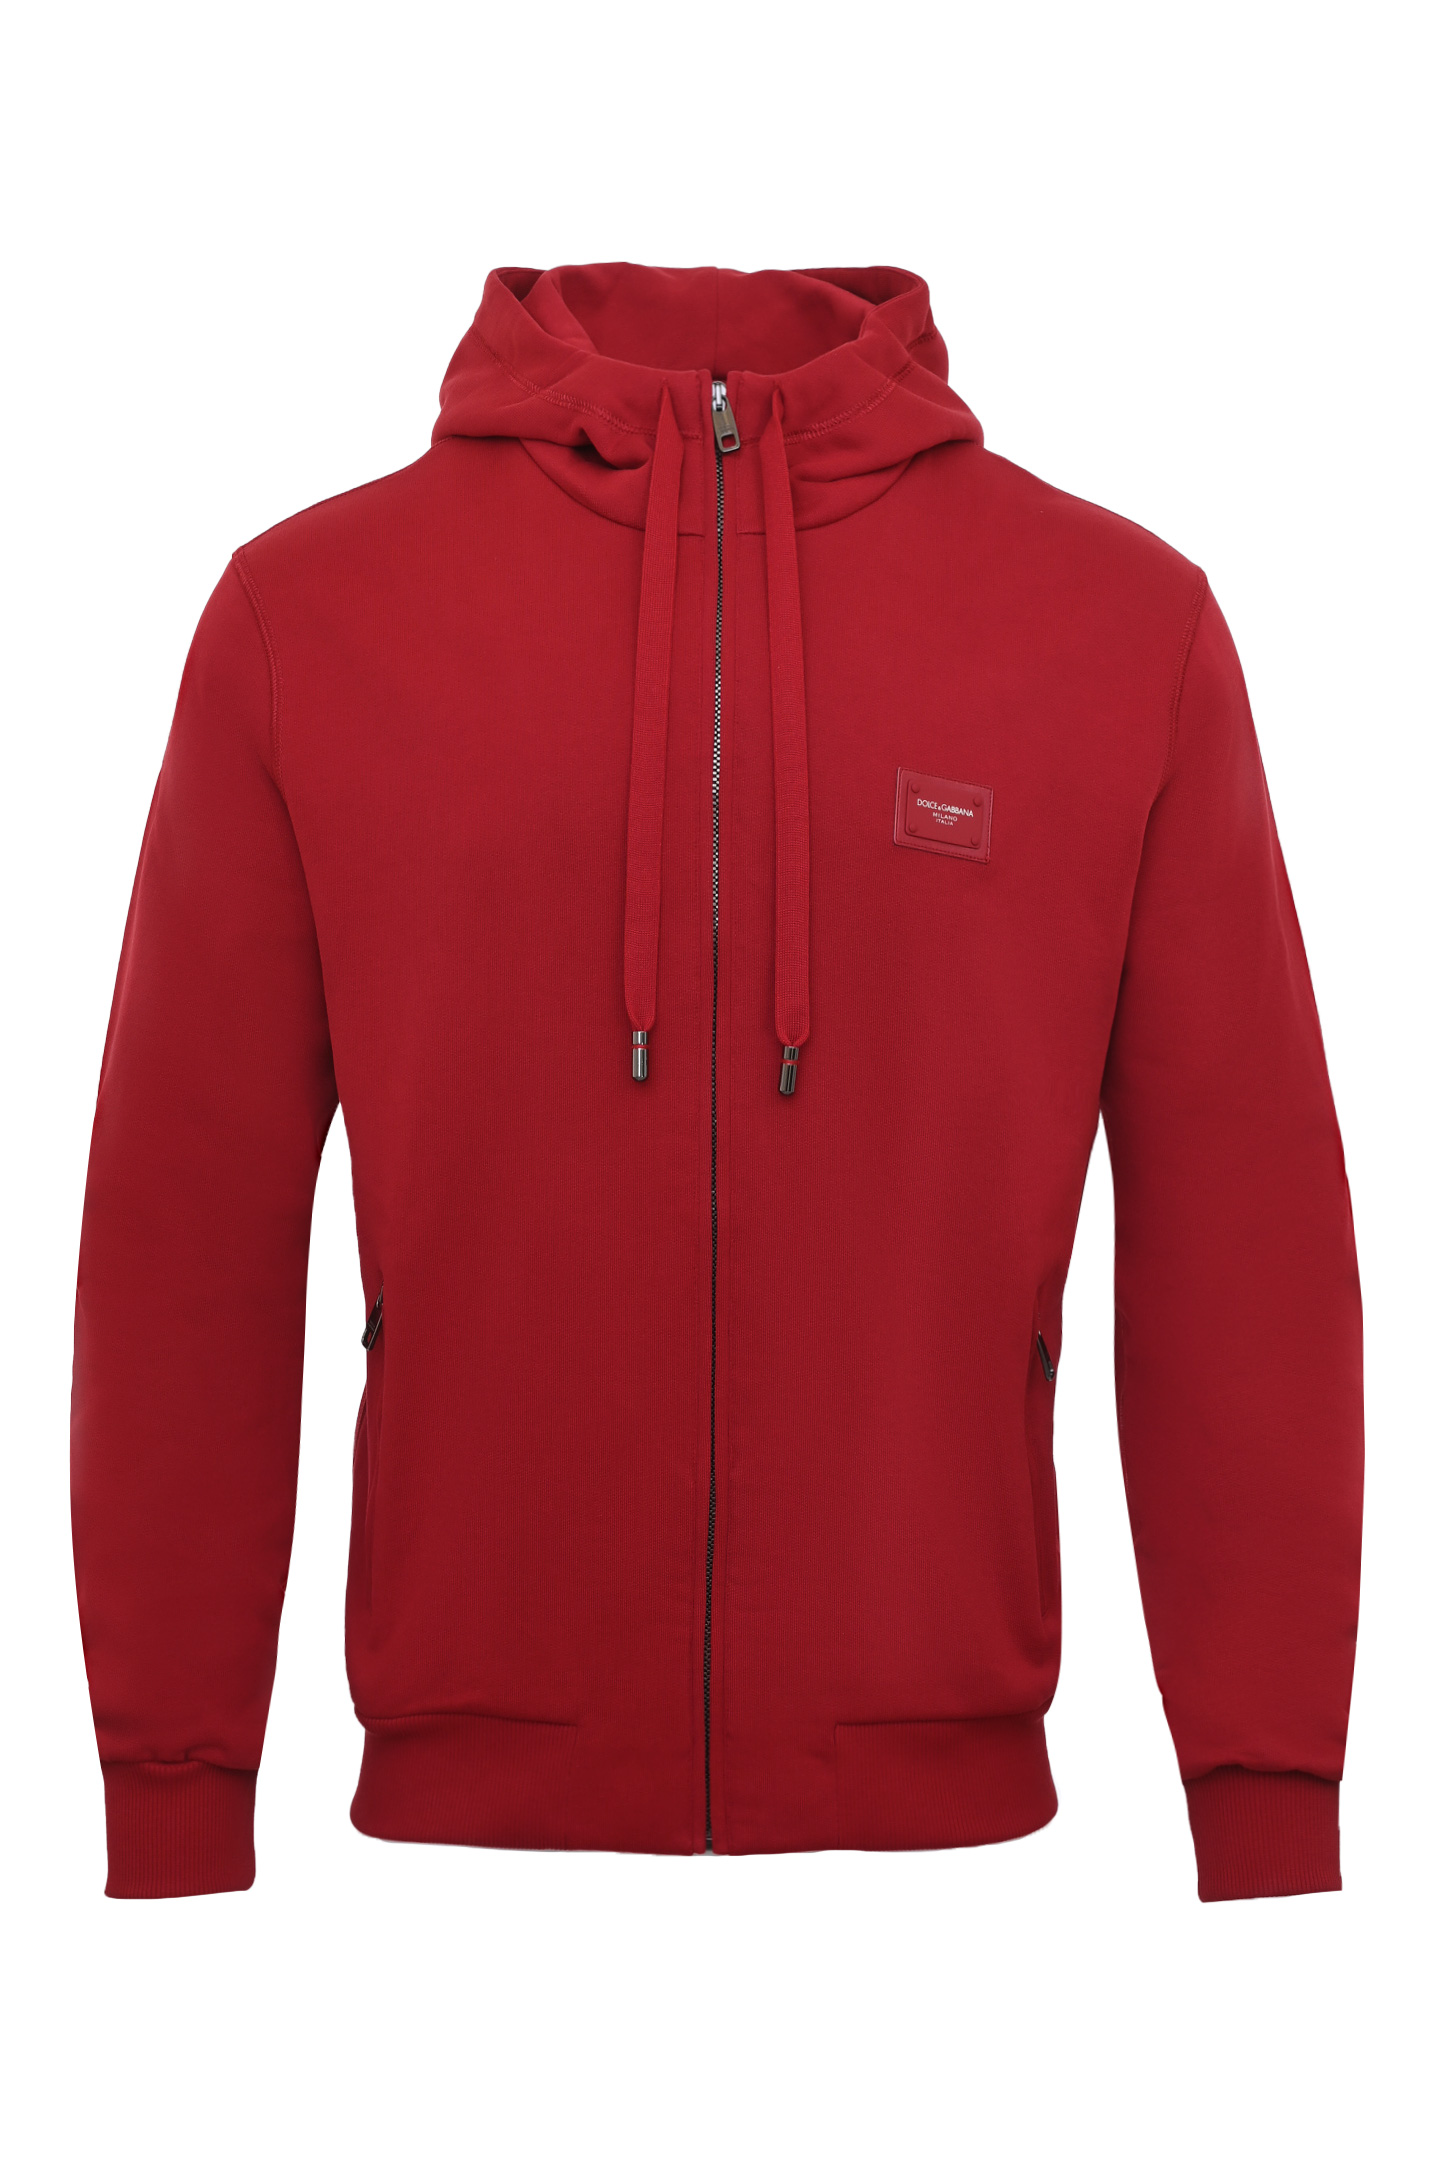 Куртка спорт DOLCE & GABBANA G9PD2T FU7DU, цвет: Красный, Мужской